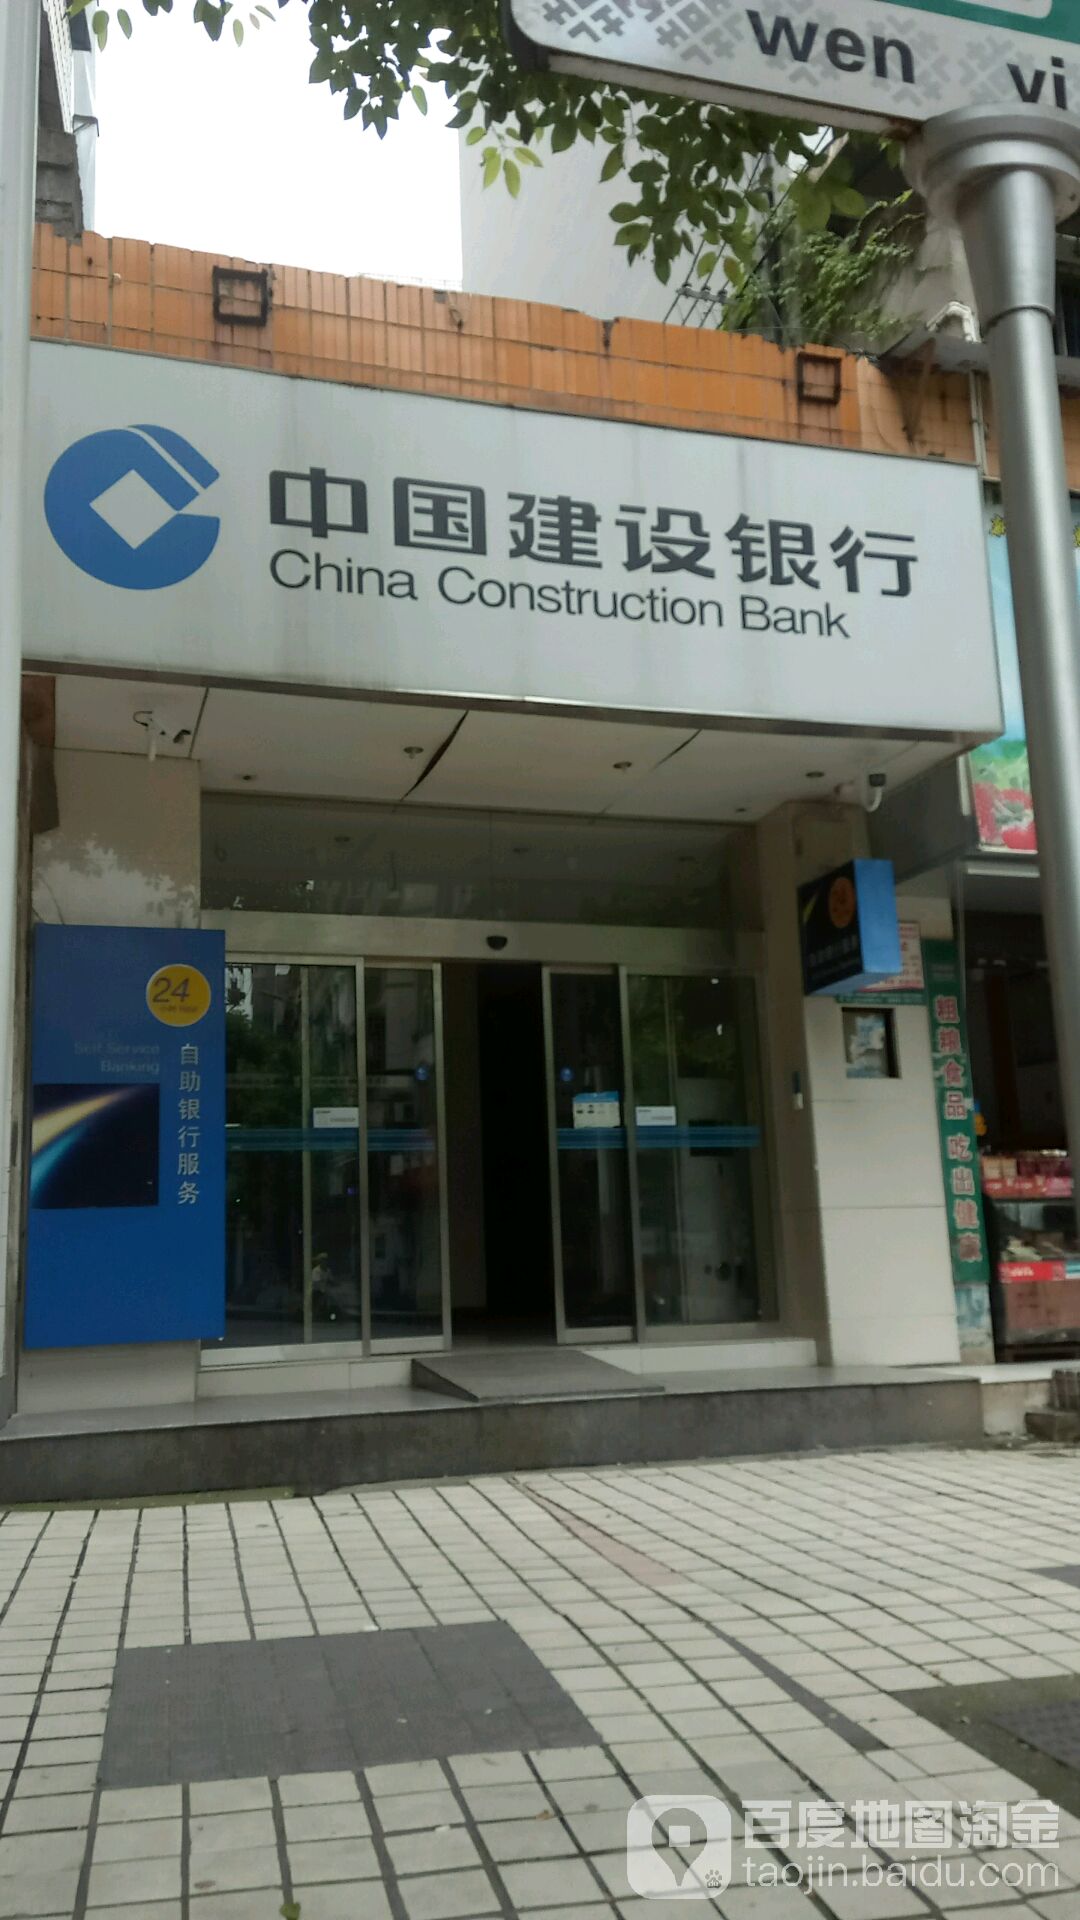 中國建設銀行24小時自助銀行服務(文藝路)